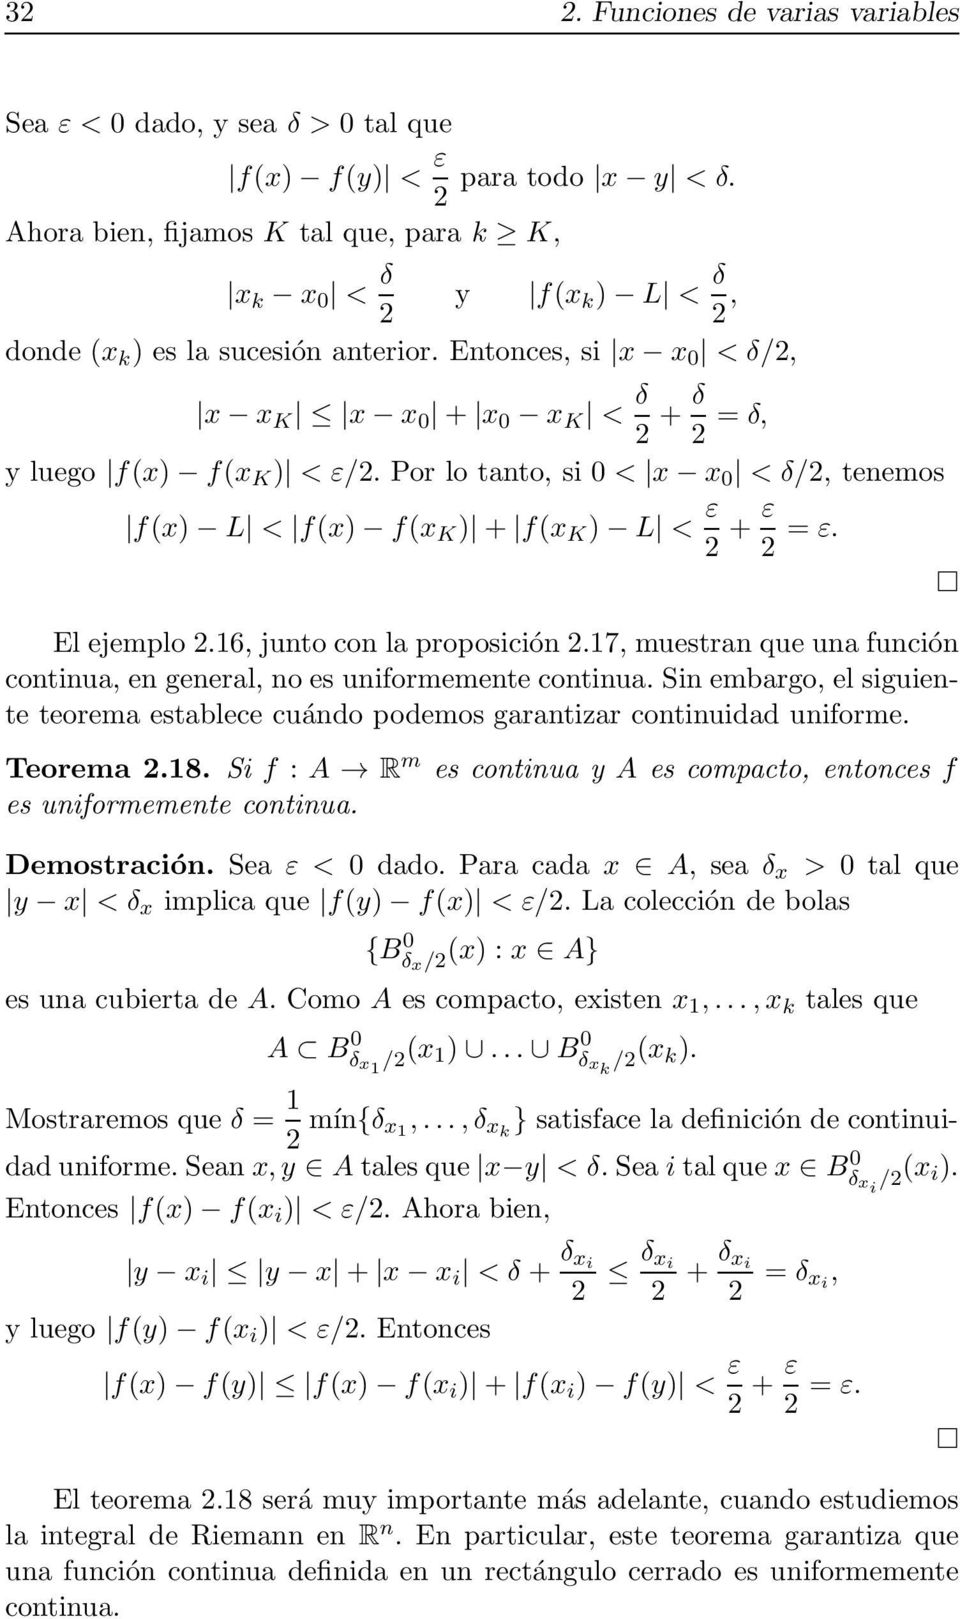 Entonces, si x x 0 < δ/2, x x K x x 0 + x 0 x K < δ 2 + δ 2 = δ, y luego f(x) f(x K ) < ε/2. Por lo tanto, si 0 < x x 0 < δ/2, tenemos f(x) L < f(x) f(x K ) + f(x K ) L < ε 2 + ε 2 = ε. El ejemplo 2.